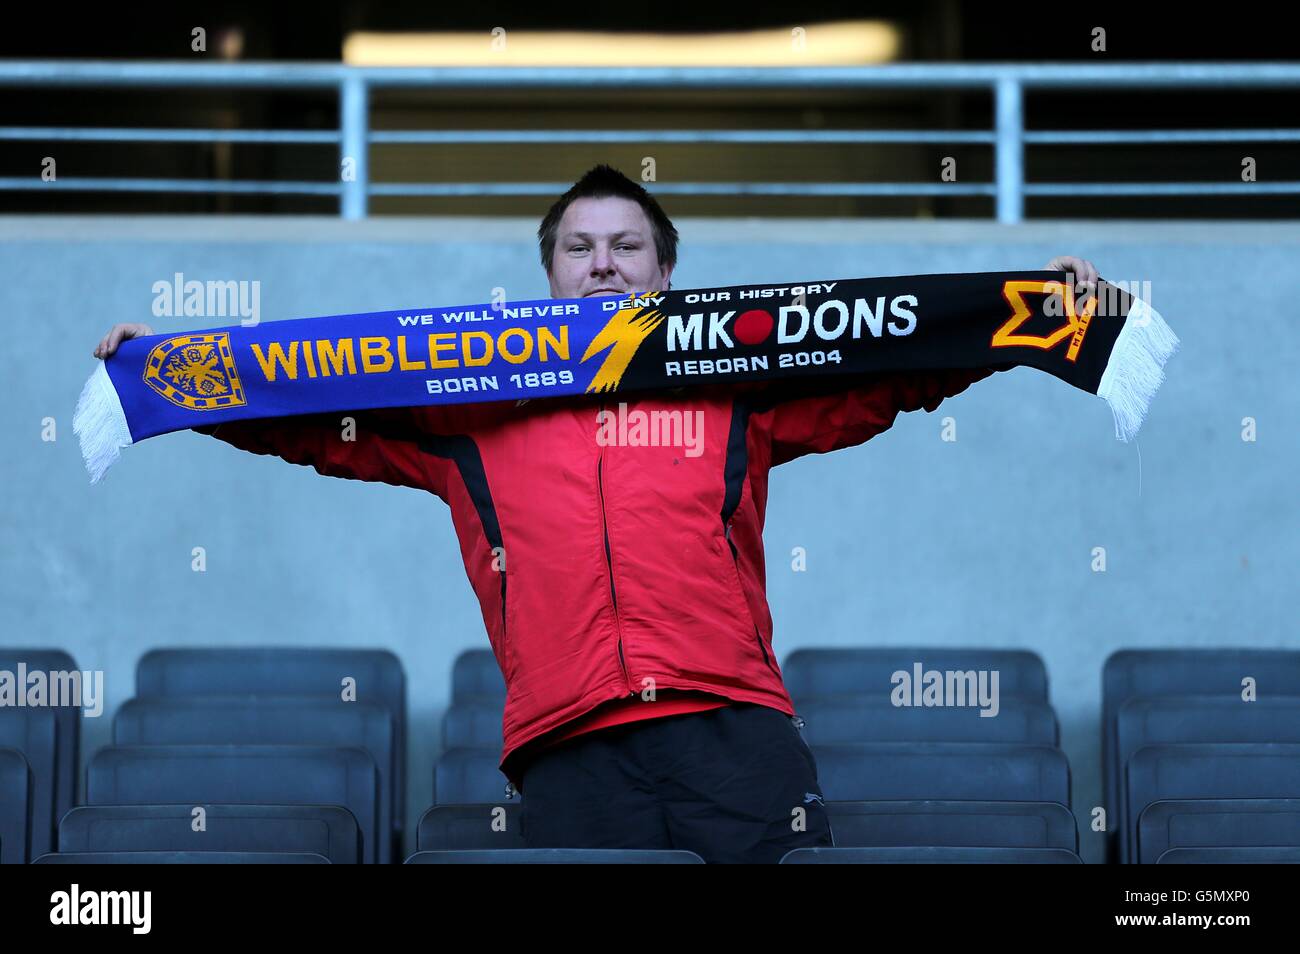 Un fan de Milton Keynes Dons sostiene un Wimbledon & Bufanda MK Dons en los  soportes Fotografía de stock - Alamy